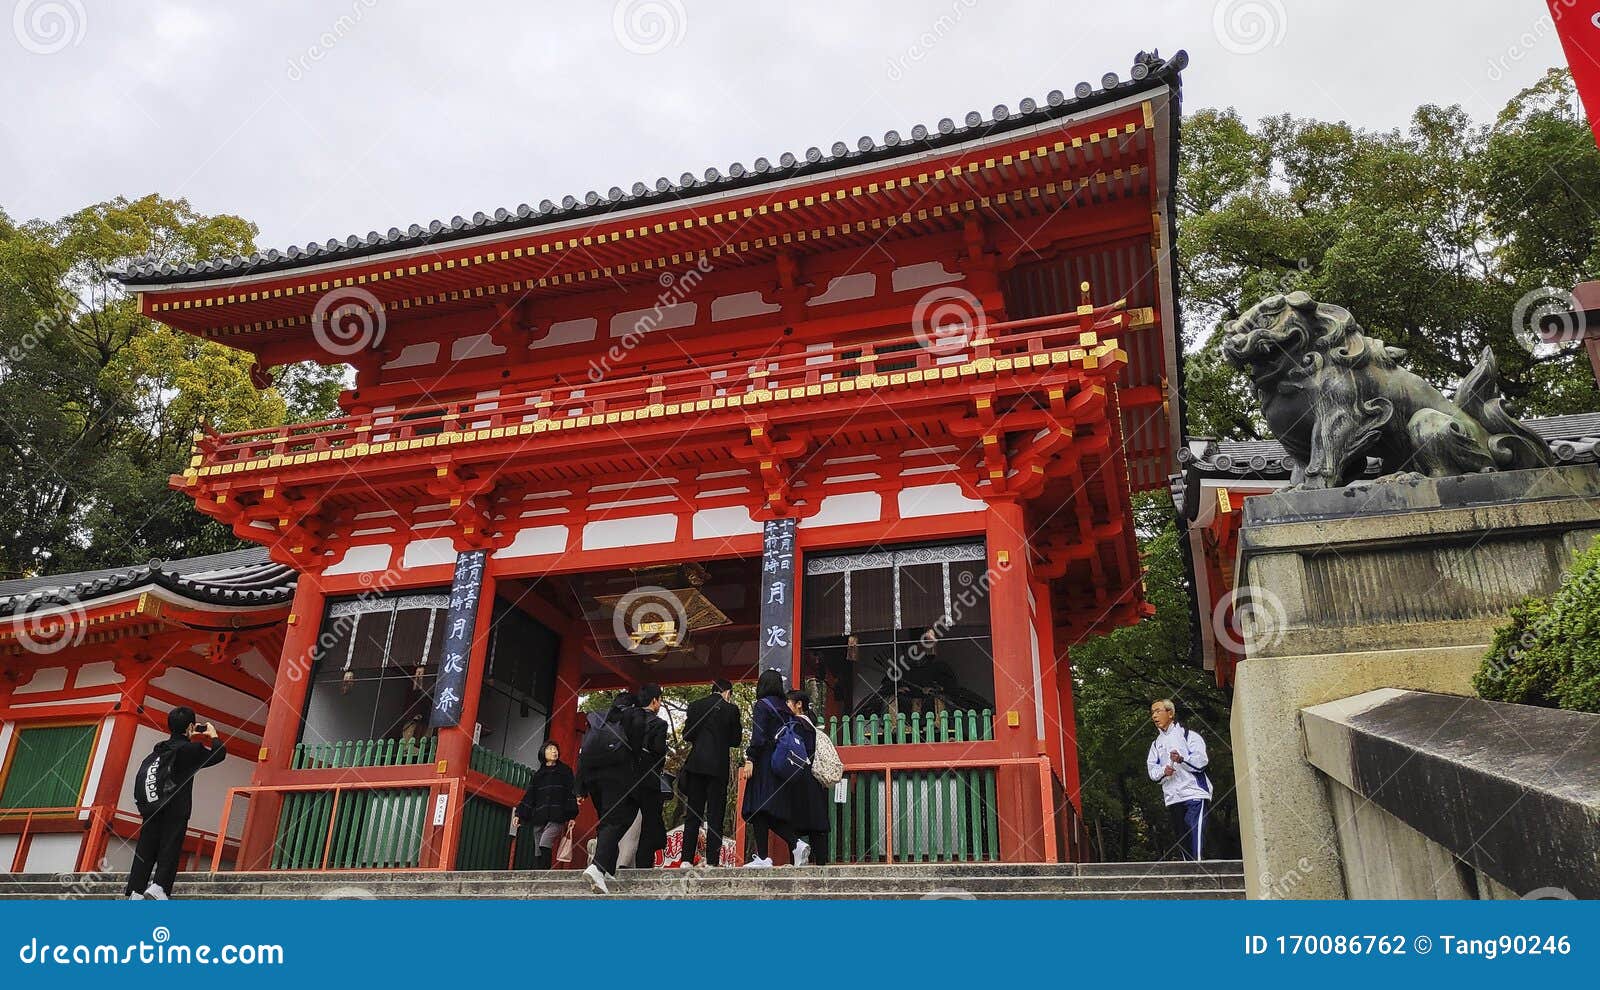 日本京都八坂神社图库摄影片 图片包括有日本京都八坂神社